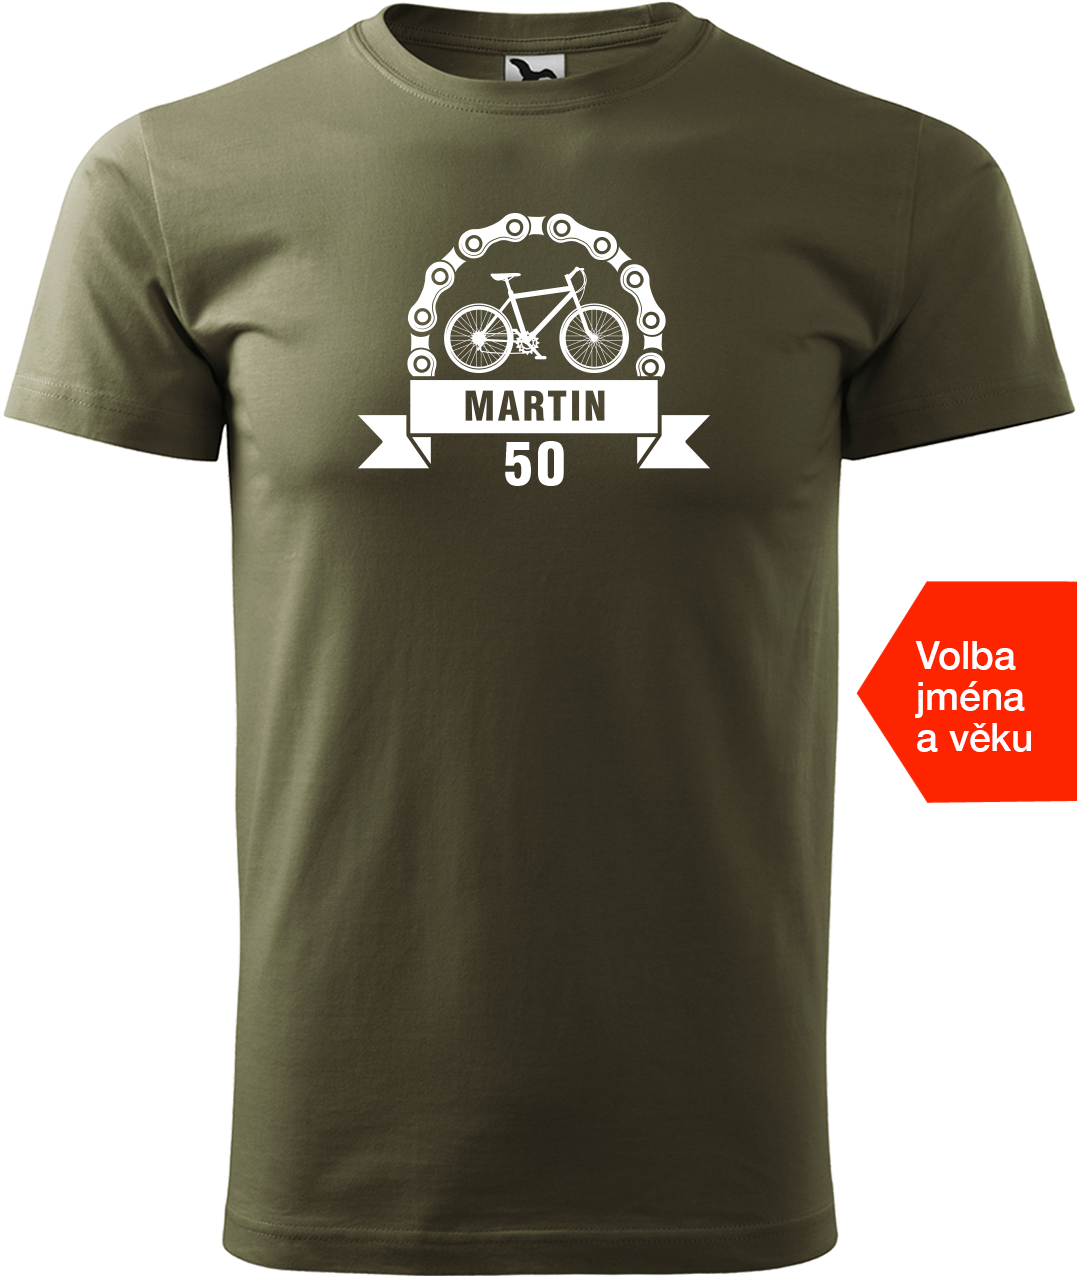 Pánské tričko pro cyklistu se jménem a věkem - Blahopřání Velikost: XL, Barva: Military (69)